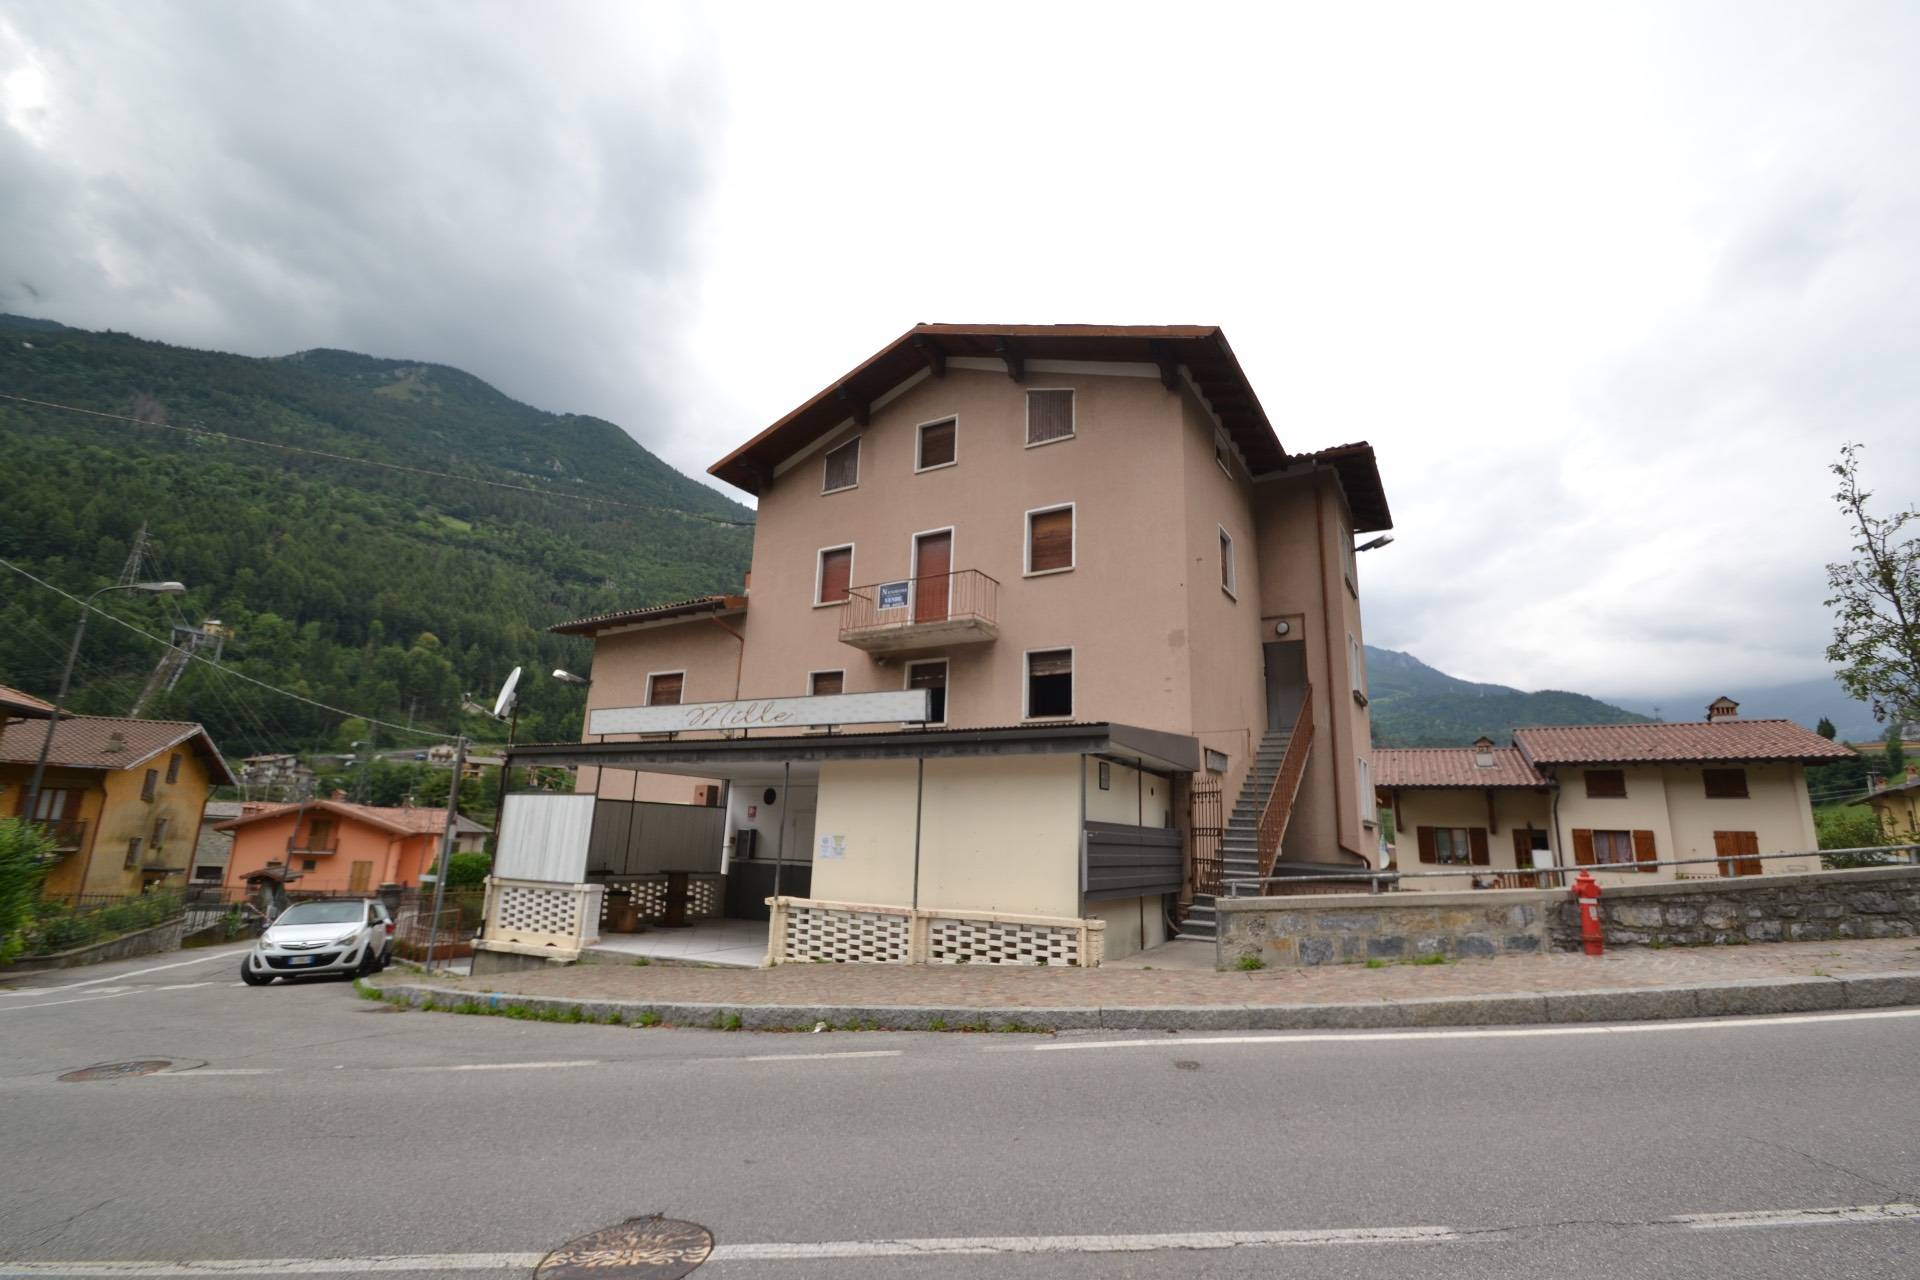 Palazzo / Stabile in vendita a Ardesio, 14 locali, prezzo € 250.000 | PortaleAgenzieImmobiliari.it